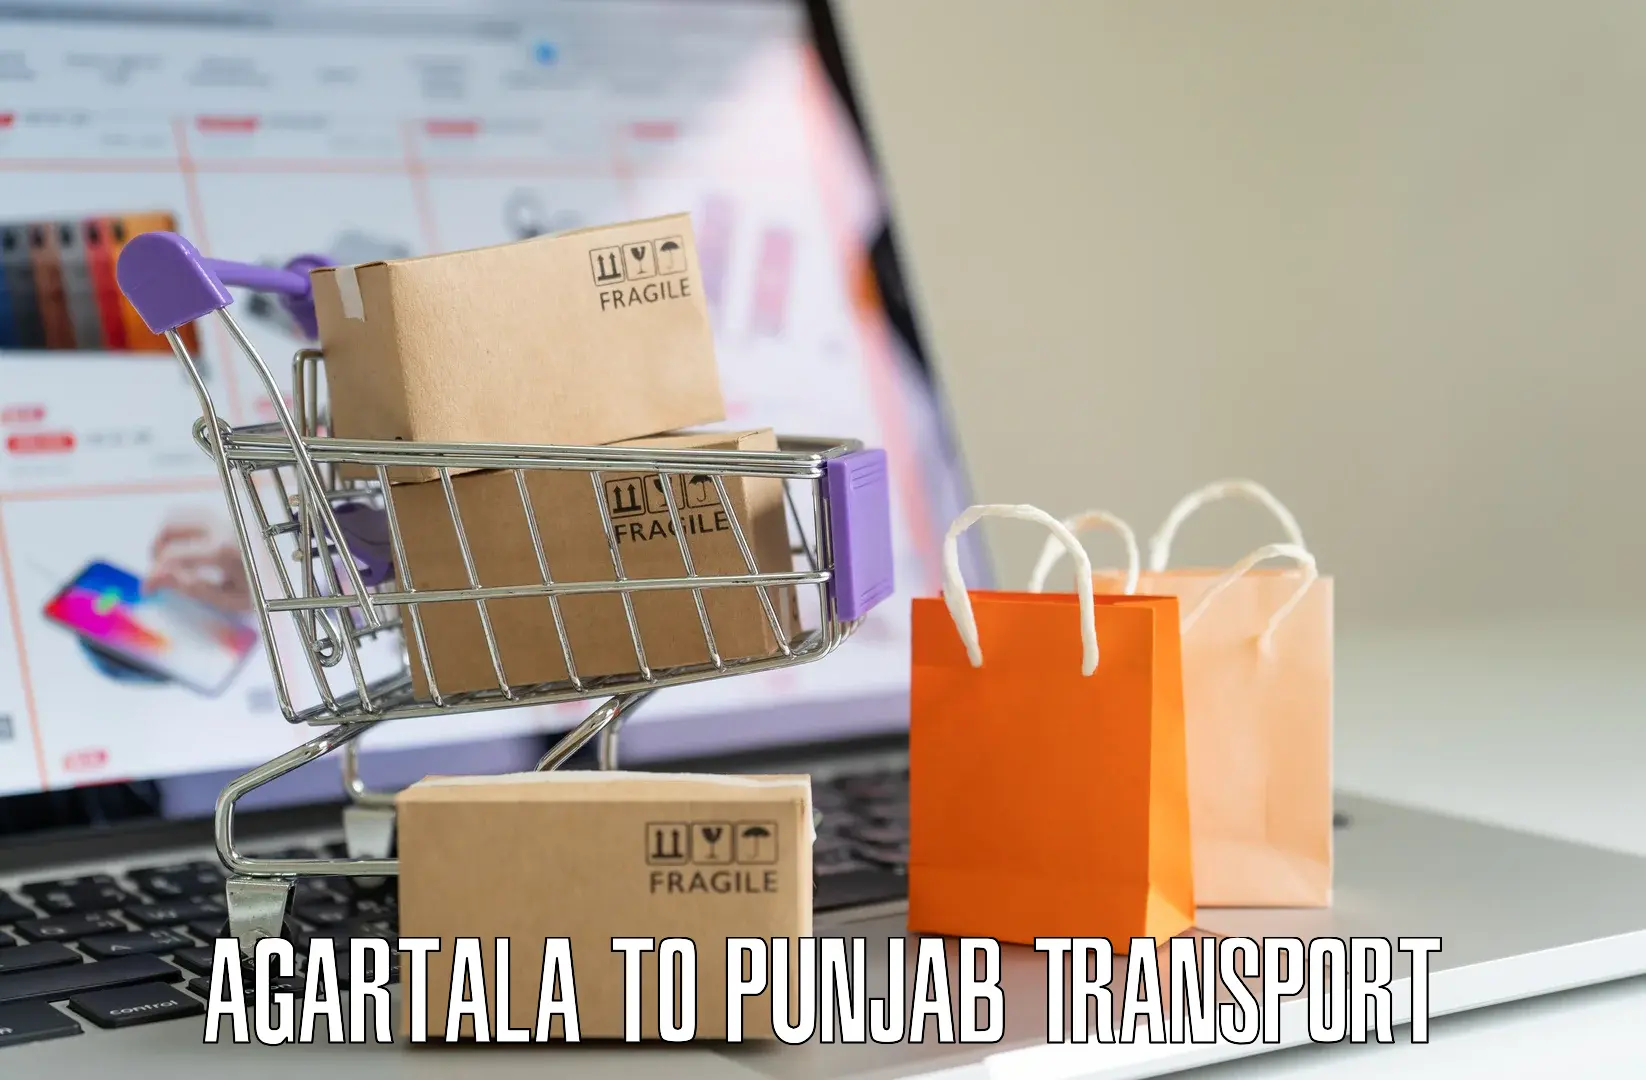 Two wheeler parcel service Agartala to Hoshiarpur